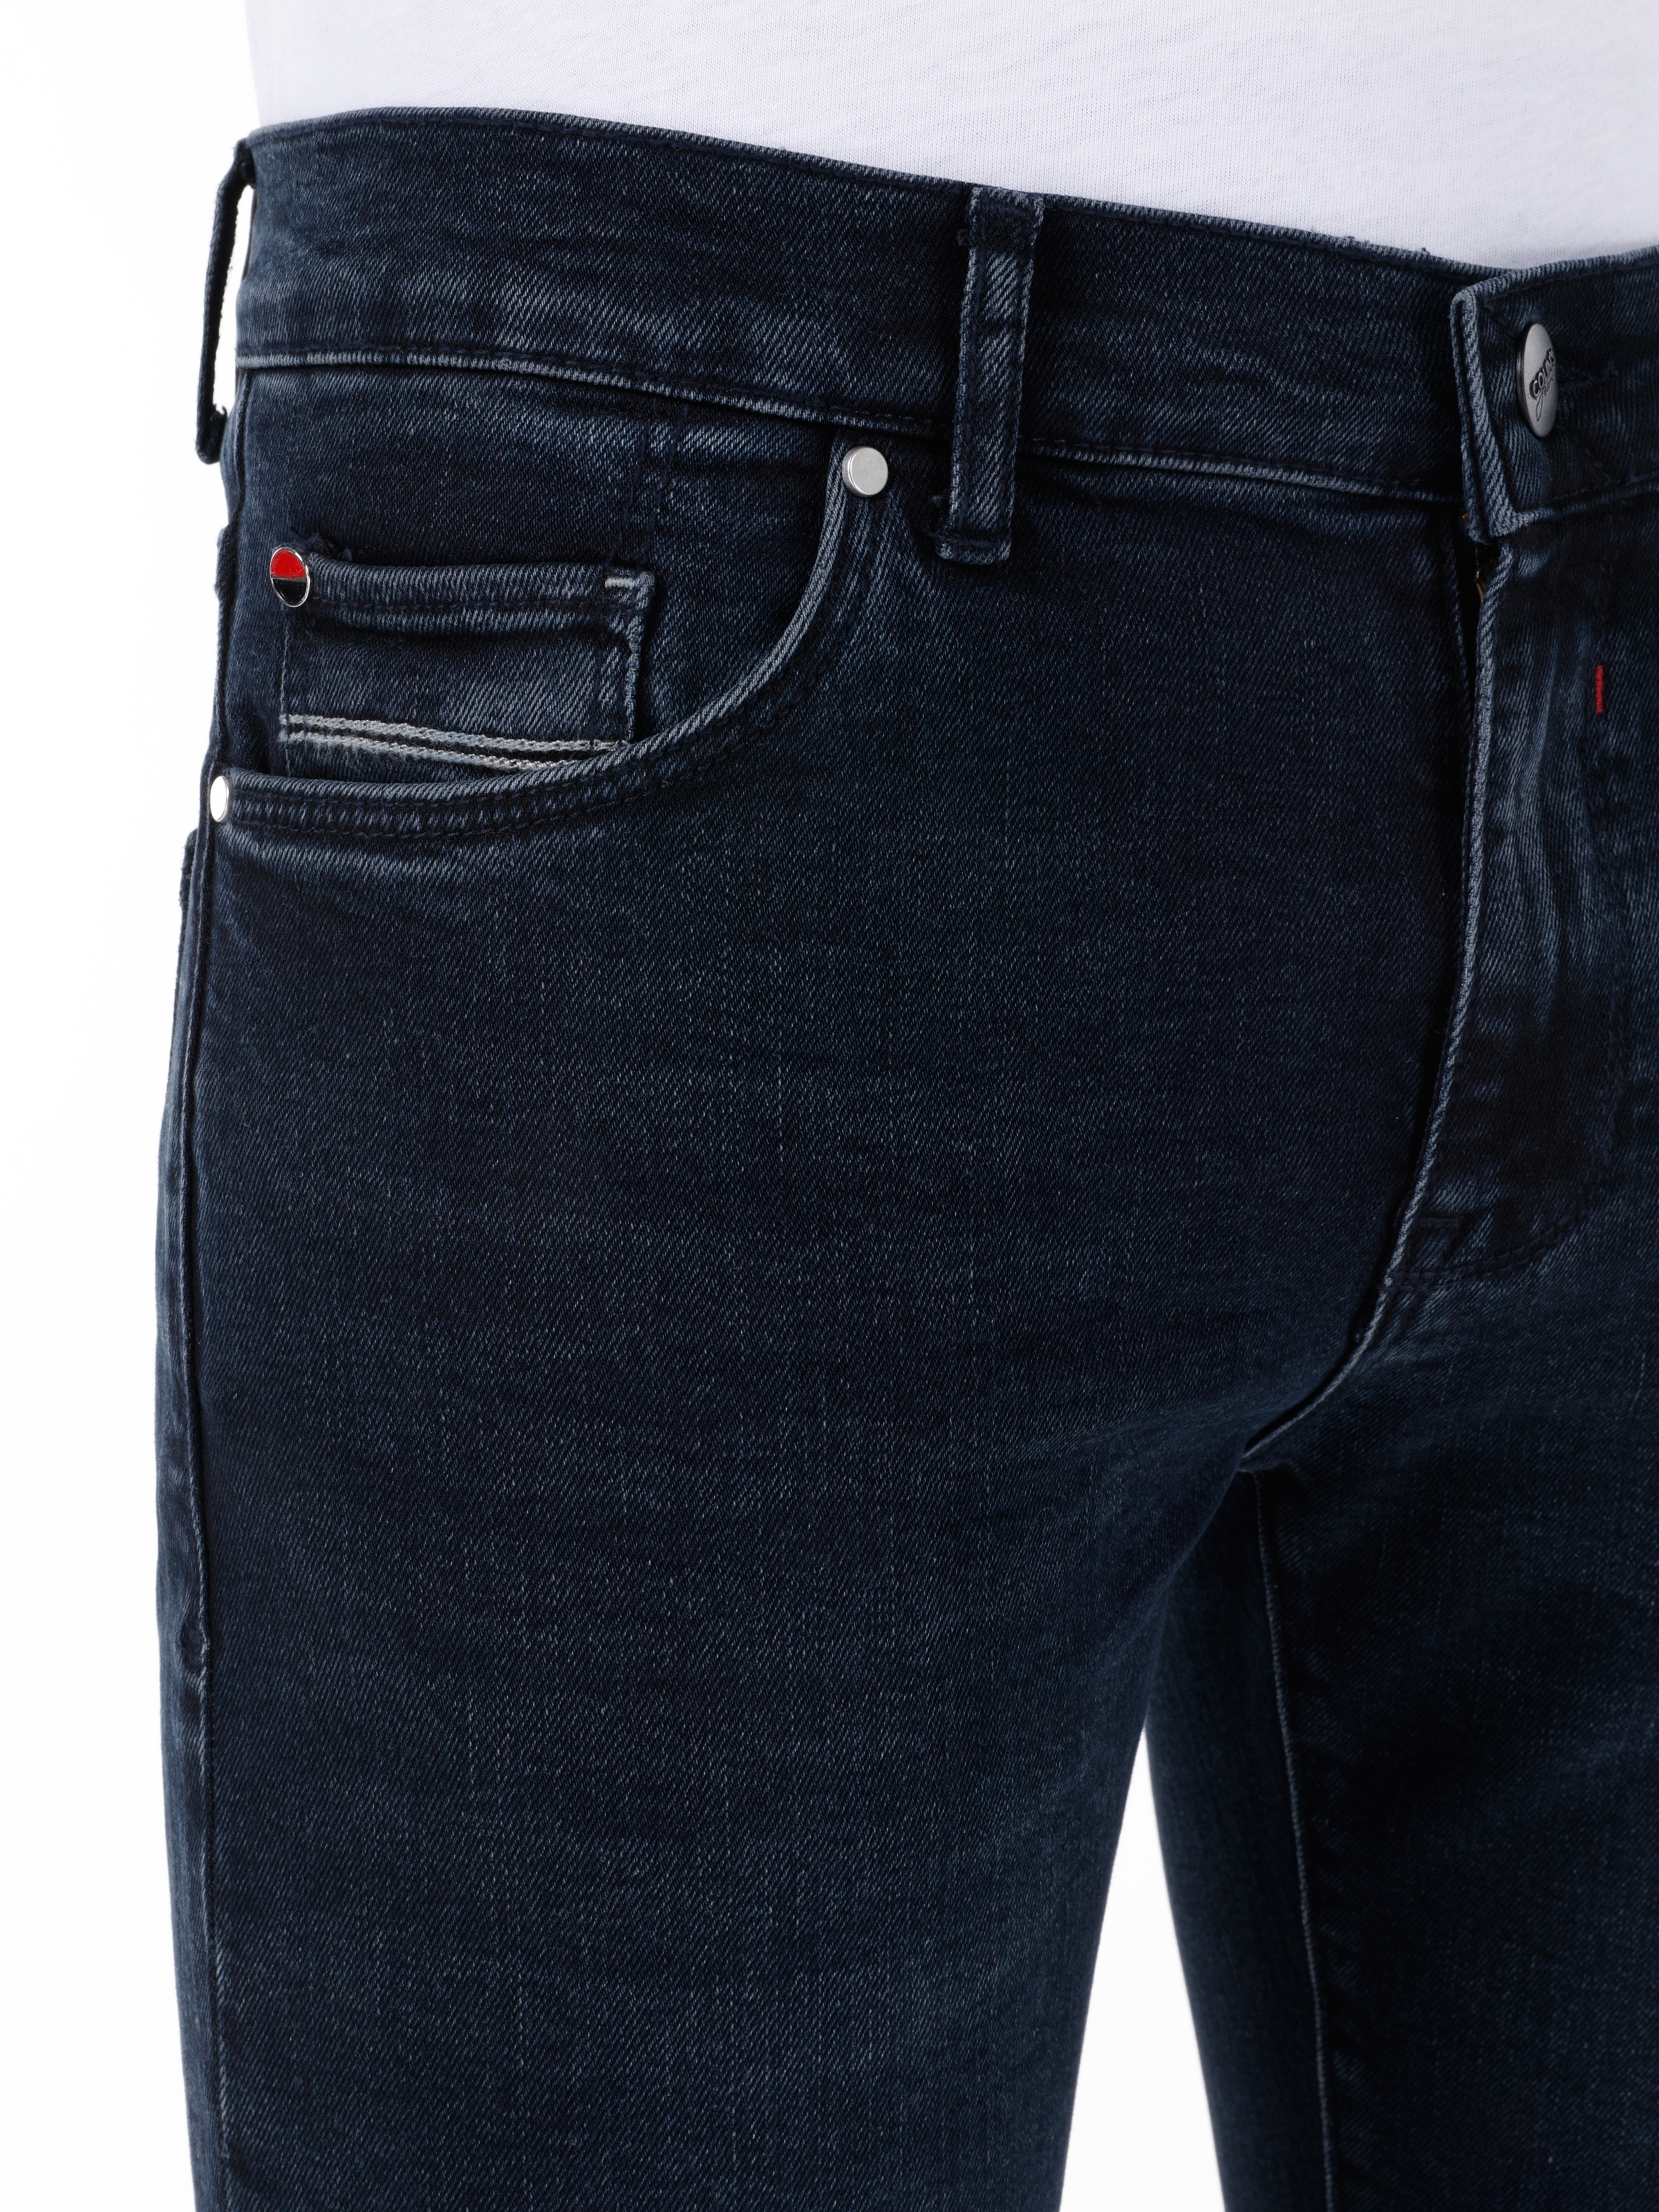 Afișați detalii pentru Pantaloni De Barbati Denim Skinny Fit 040 ALEX 